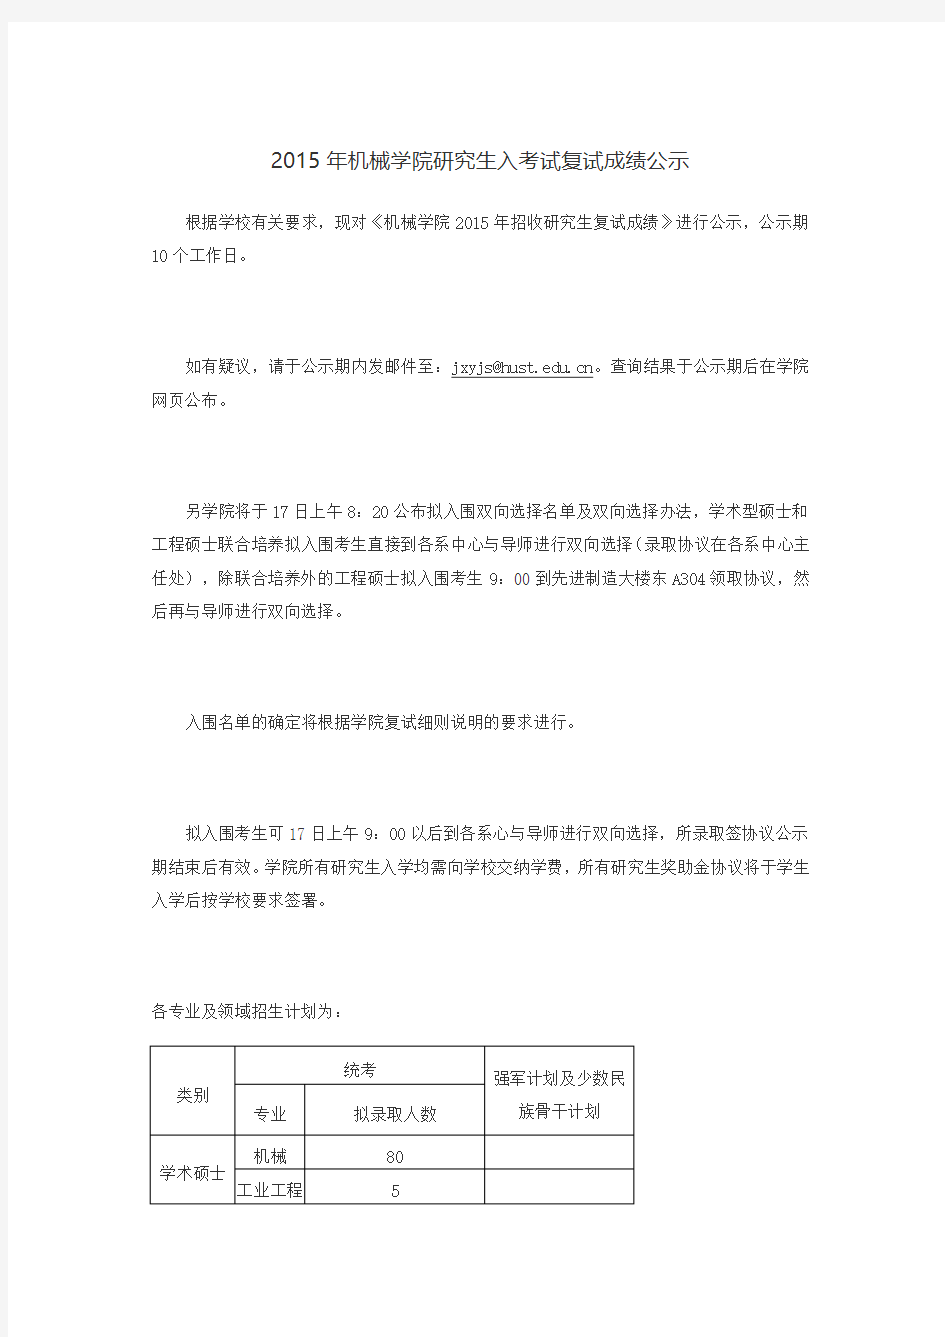 华中科技大学2015年机械学院研究生入考试复试成绩公示